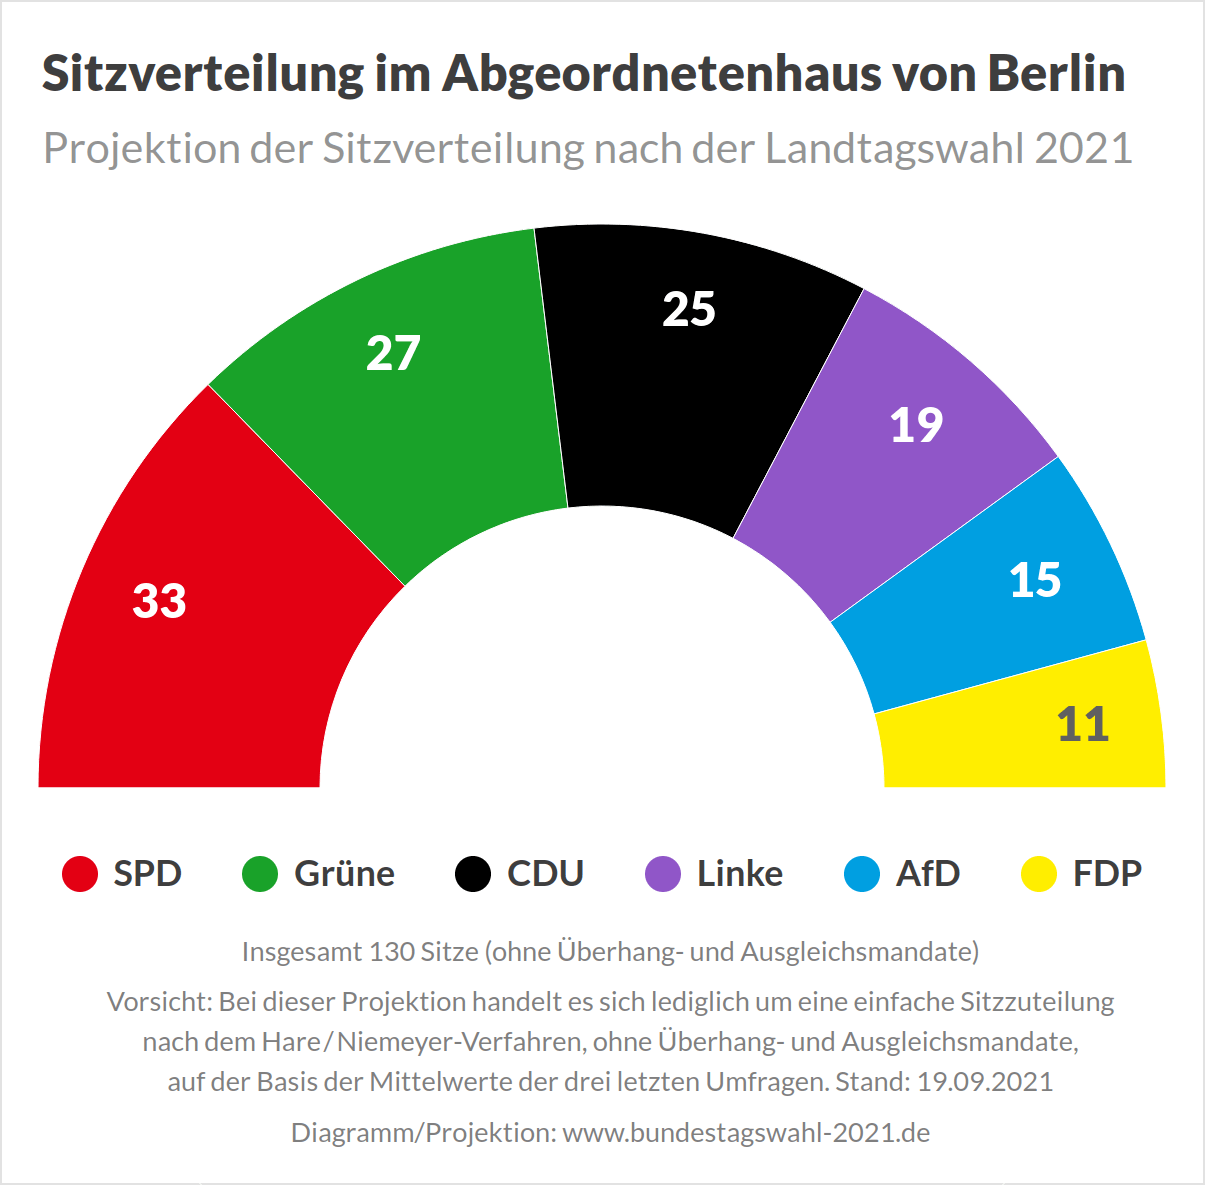 Sitzverteilung im Angeordnetenhaus von Berlin nach der Landtagswahl 2021 (Projektion)